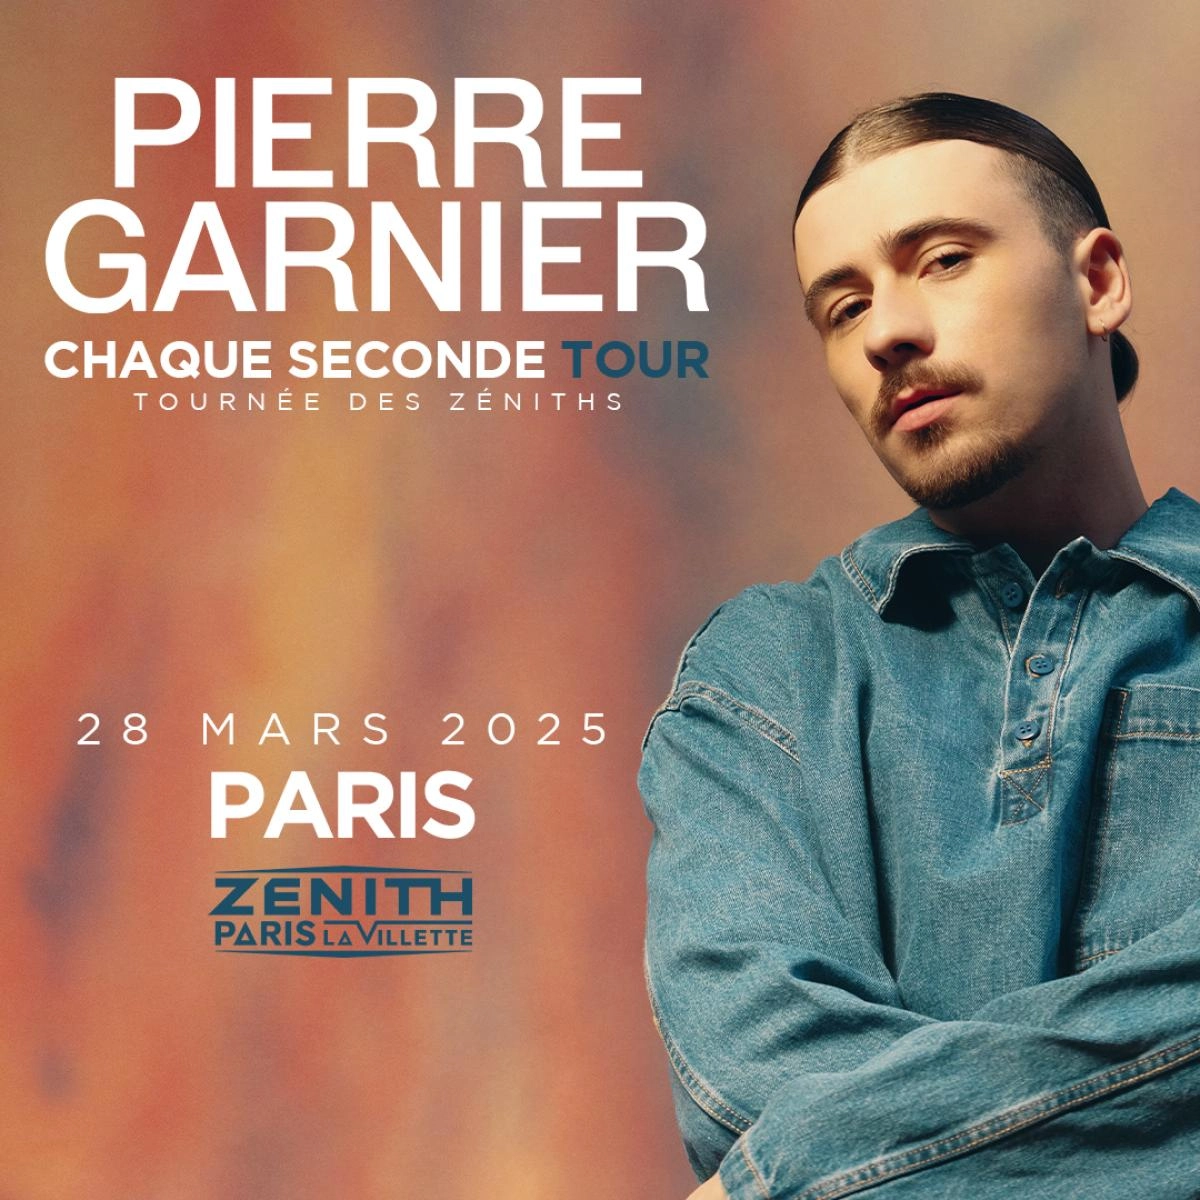 Concert Pierre Garnier à Paris (Zenith Paris) du 28 mars 2025